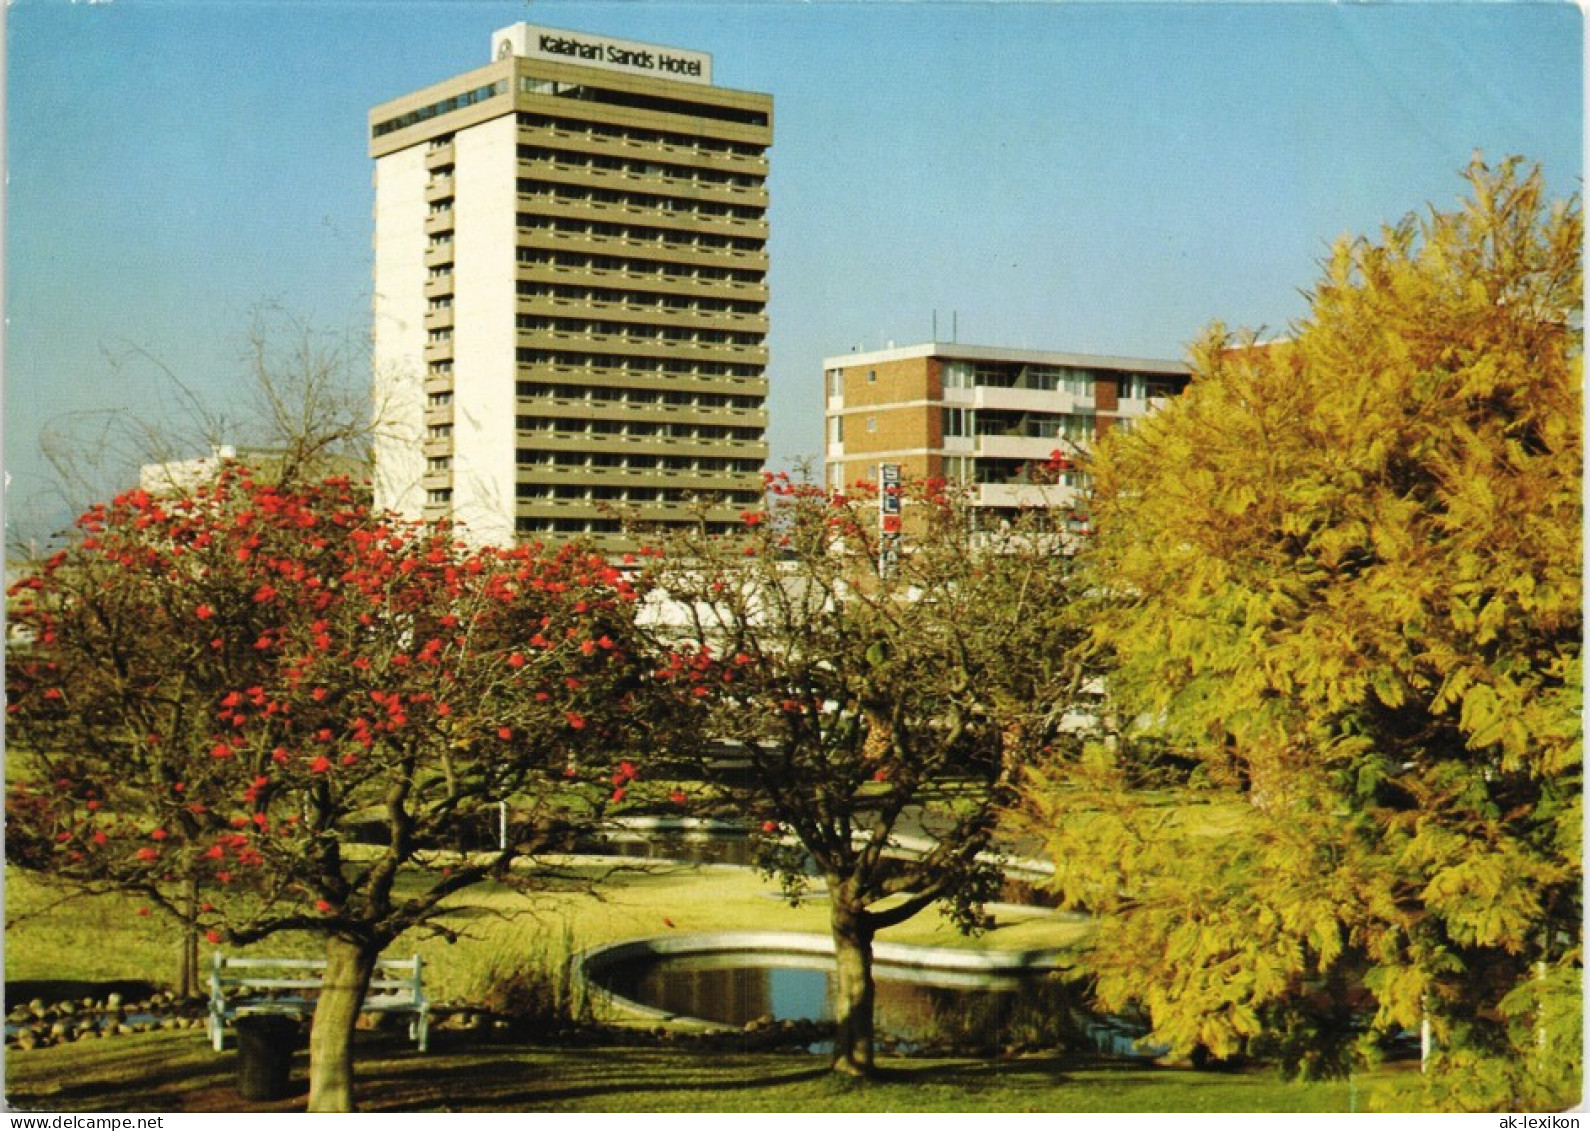 Postcard Windhuk Windhoek Kalaharl Sands Hotel, SWA Namibia Afrika 1965 - Namibië